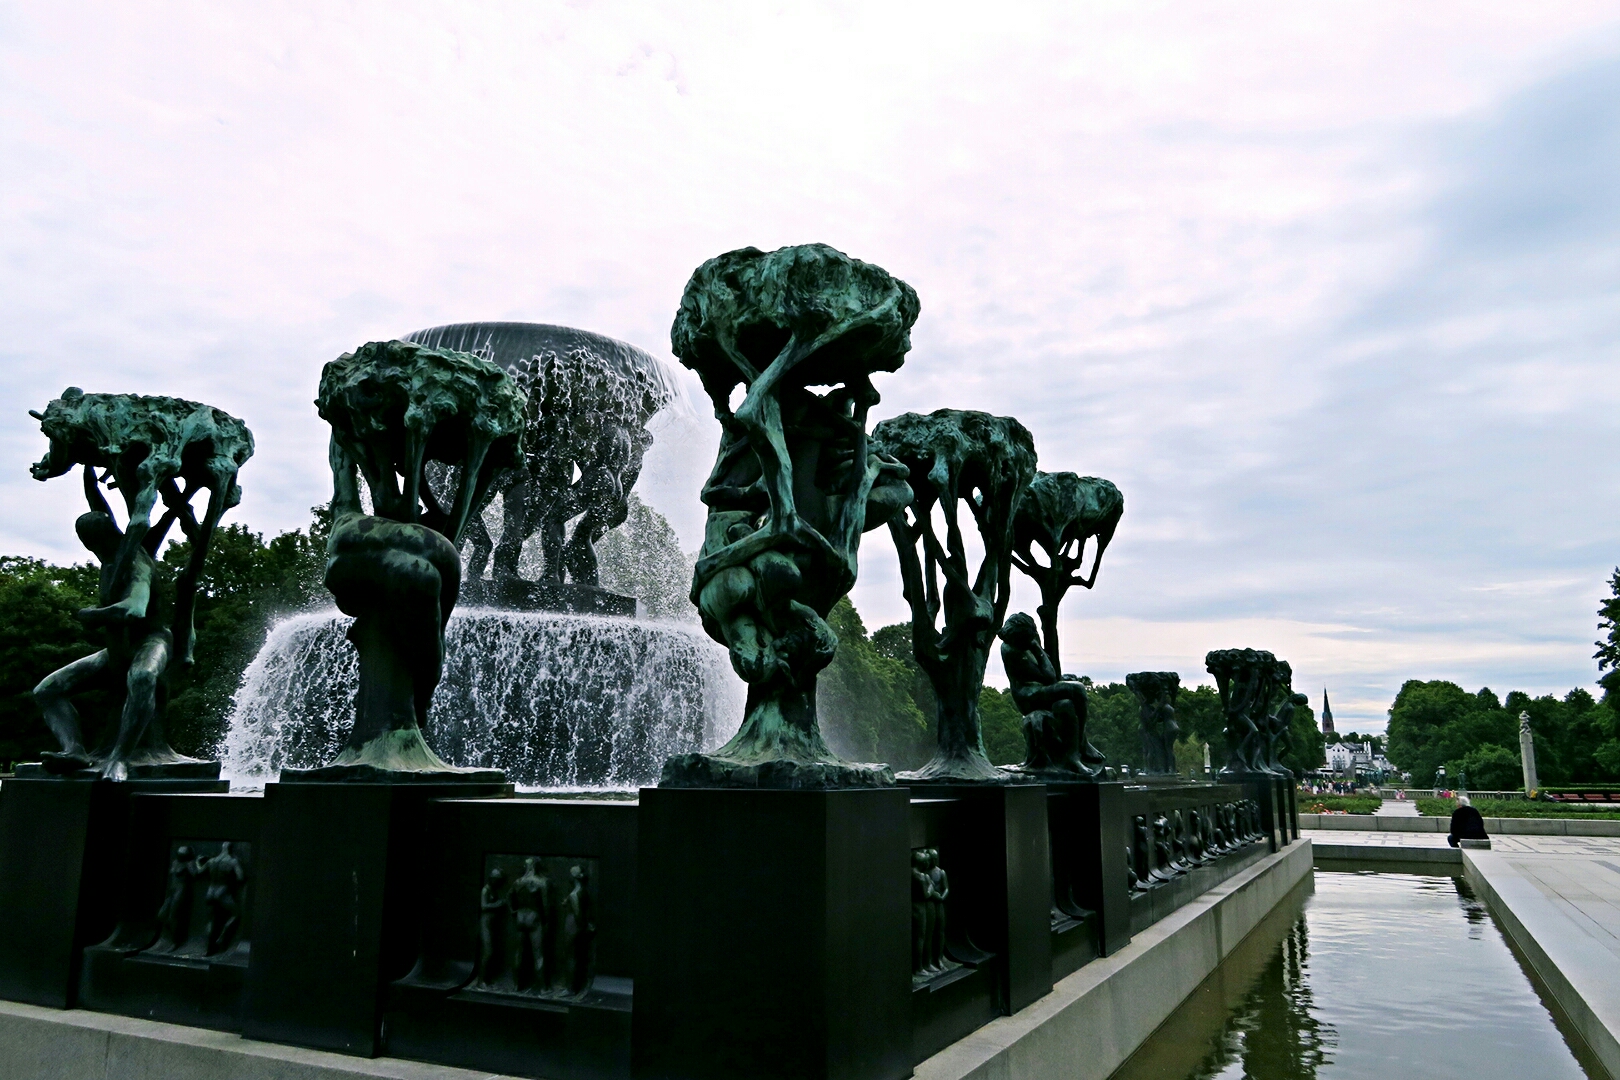 挪威雕塑家古斯塔夫,维格兰前后30年时间创作完成的一组生命礼赞